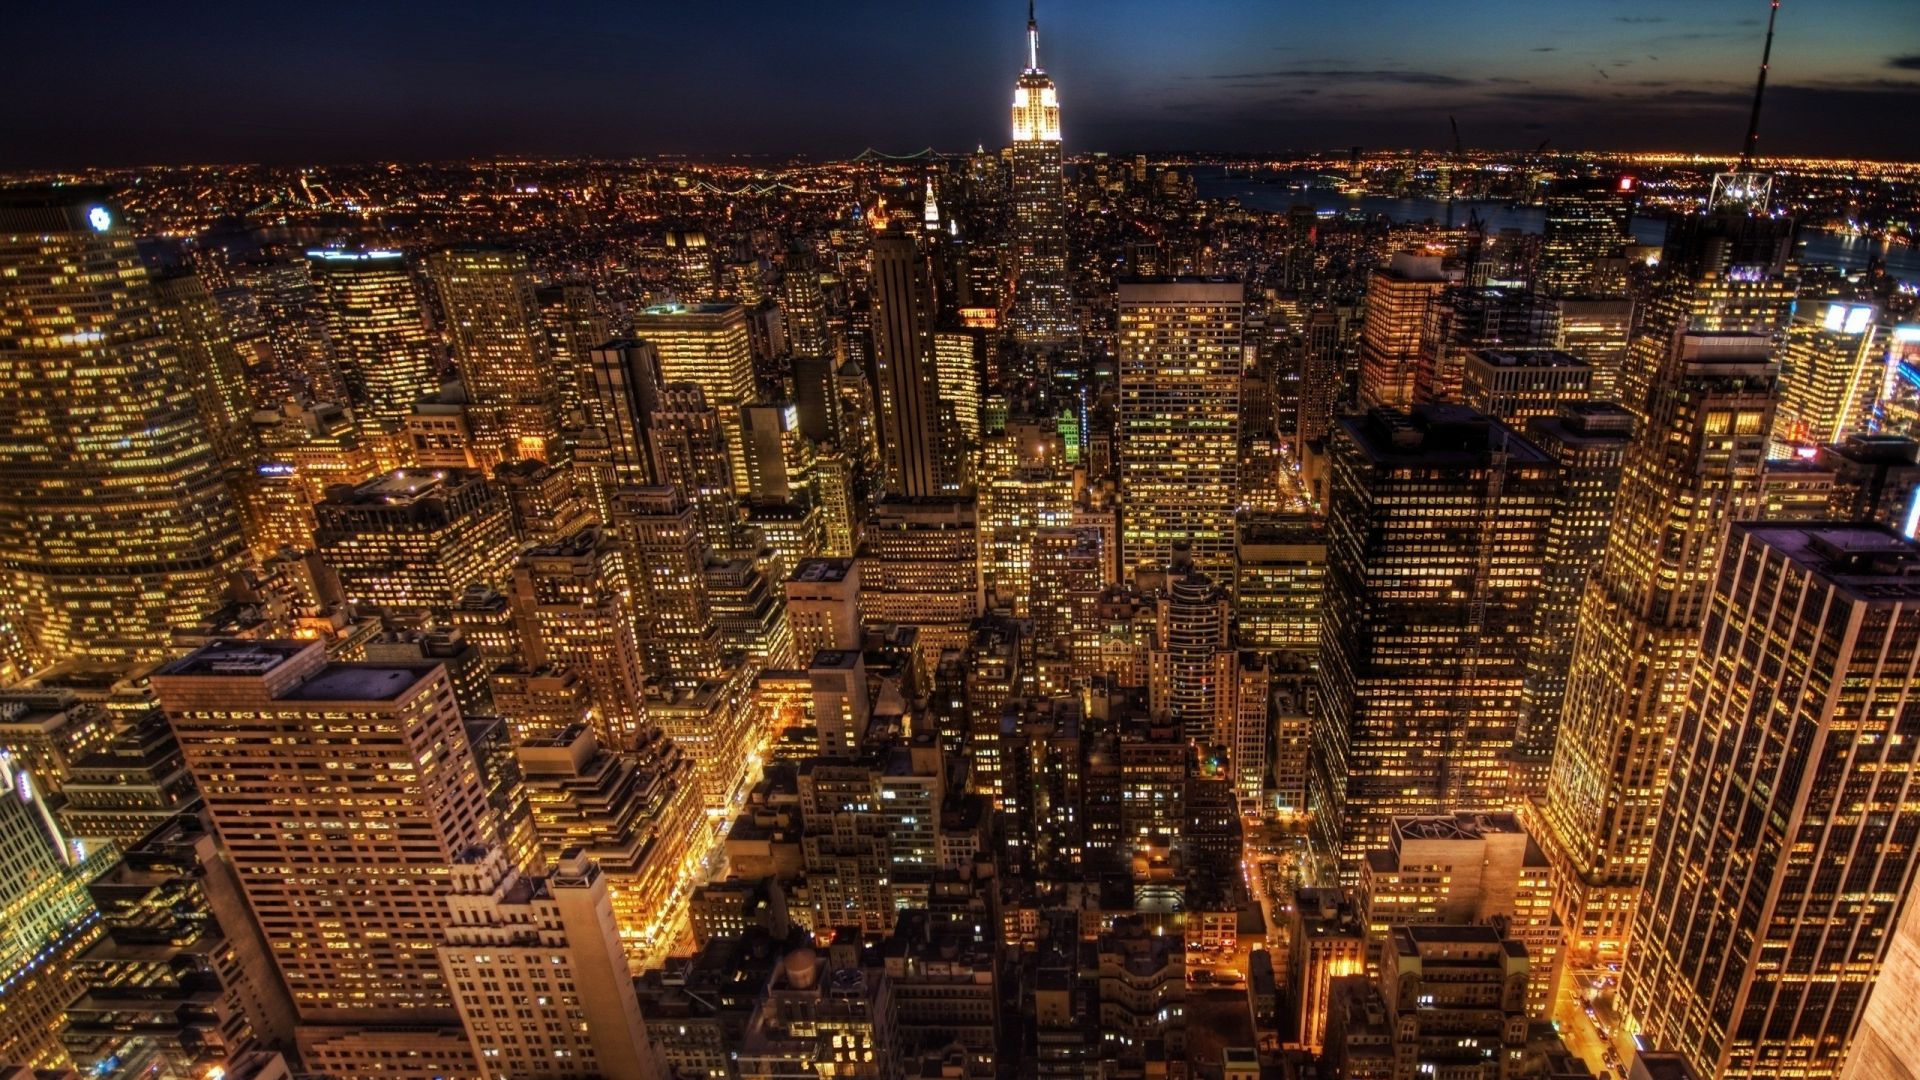 Hình nền New York City vào đêm sẽ khiến bạn ngất ngây với những đường sáng sáng lấp lánh. Bằng cách hiển thị ánh đèn phố vào đêm thanh, bạn sẽ cảm nhận được tính sống động của thành phố này, giống như khi bạn đang lang thang trên đường phố New York vào buổi tối như một chuyên gia bản đồ.